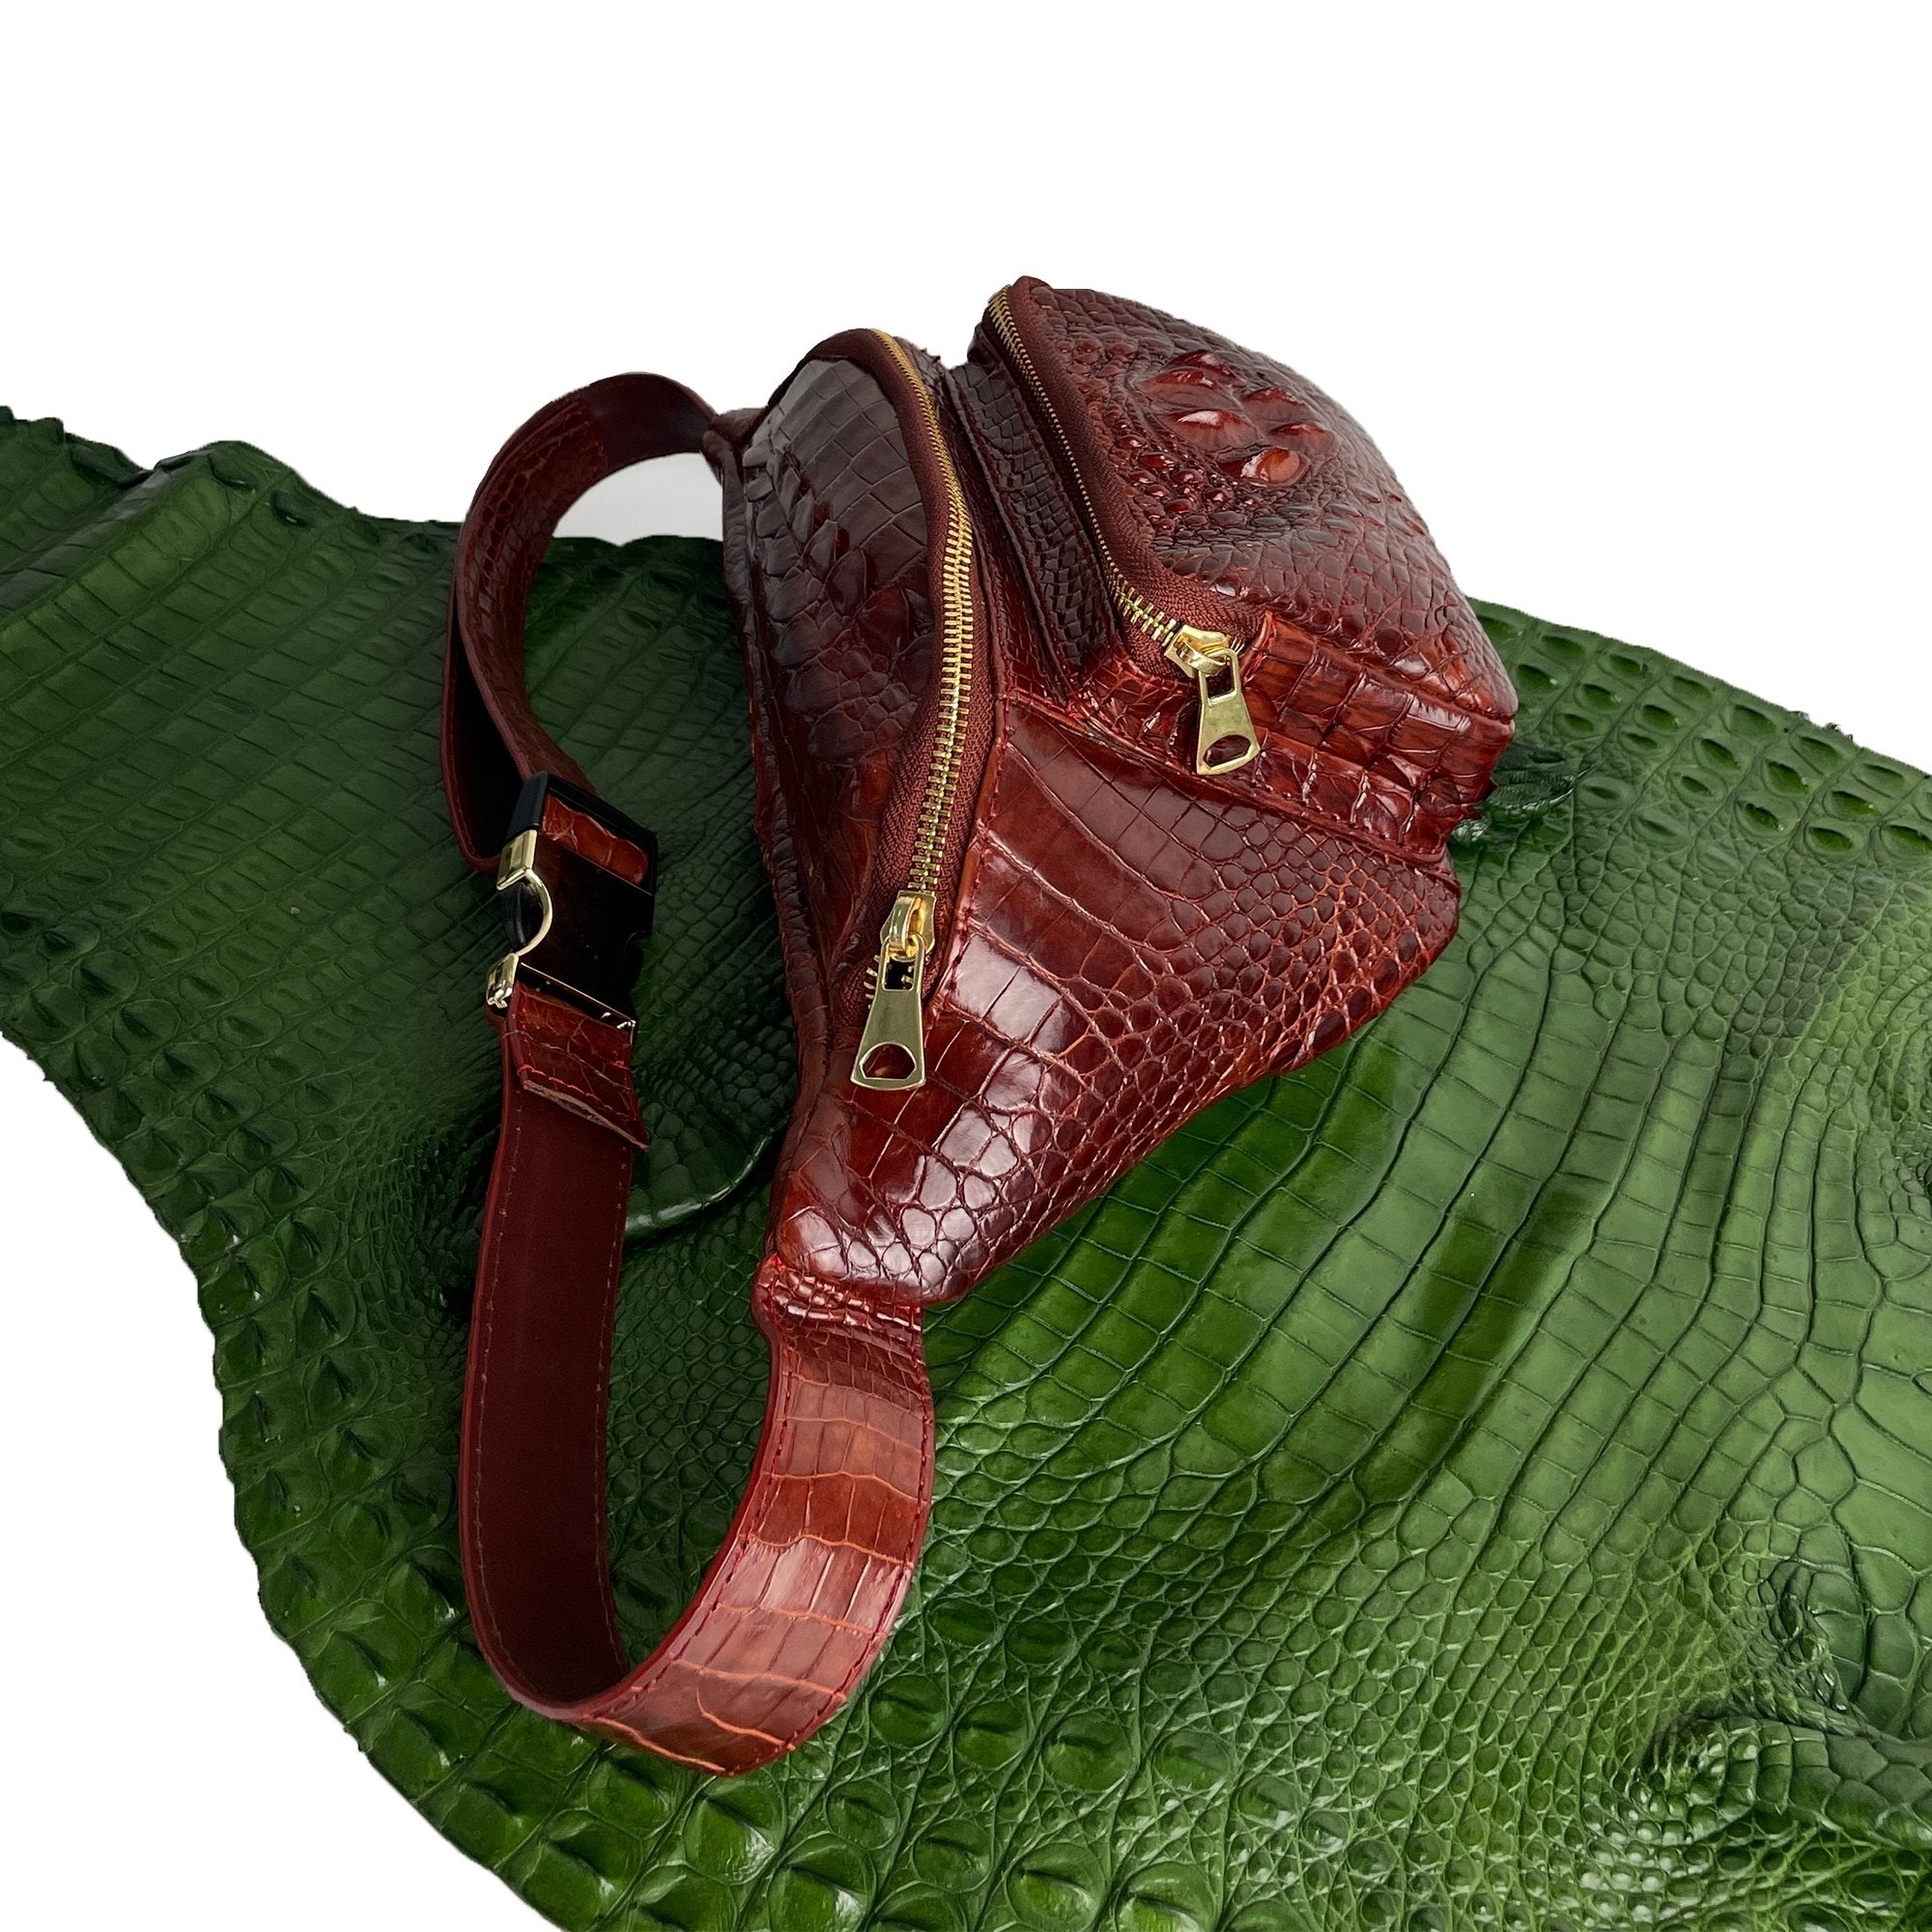 Brown Crocodile Leather Belt Bag, Leather Fanny Pack, Adjustable Crossbody Bag, Men Leather Sling Bags, Minimalist Fanny Belt Bag - Vinacreations